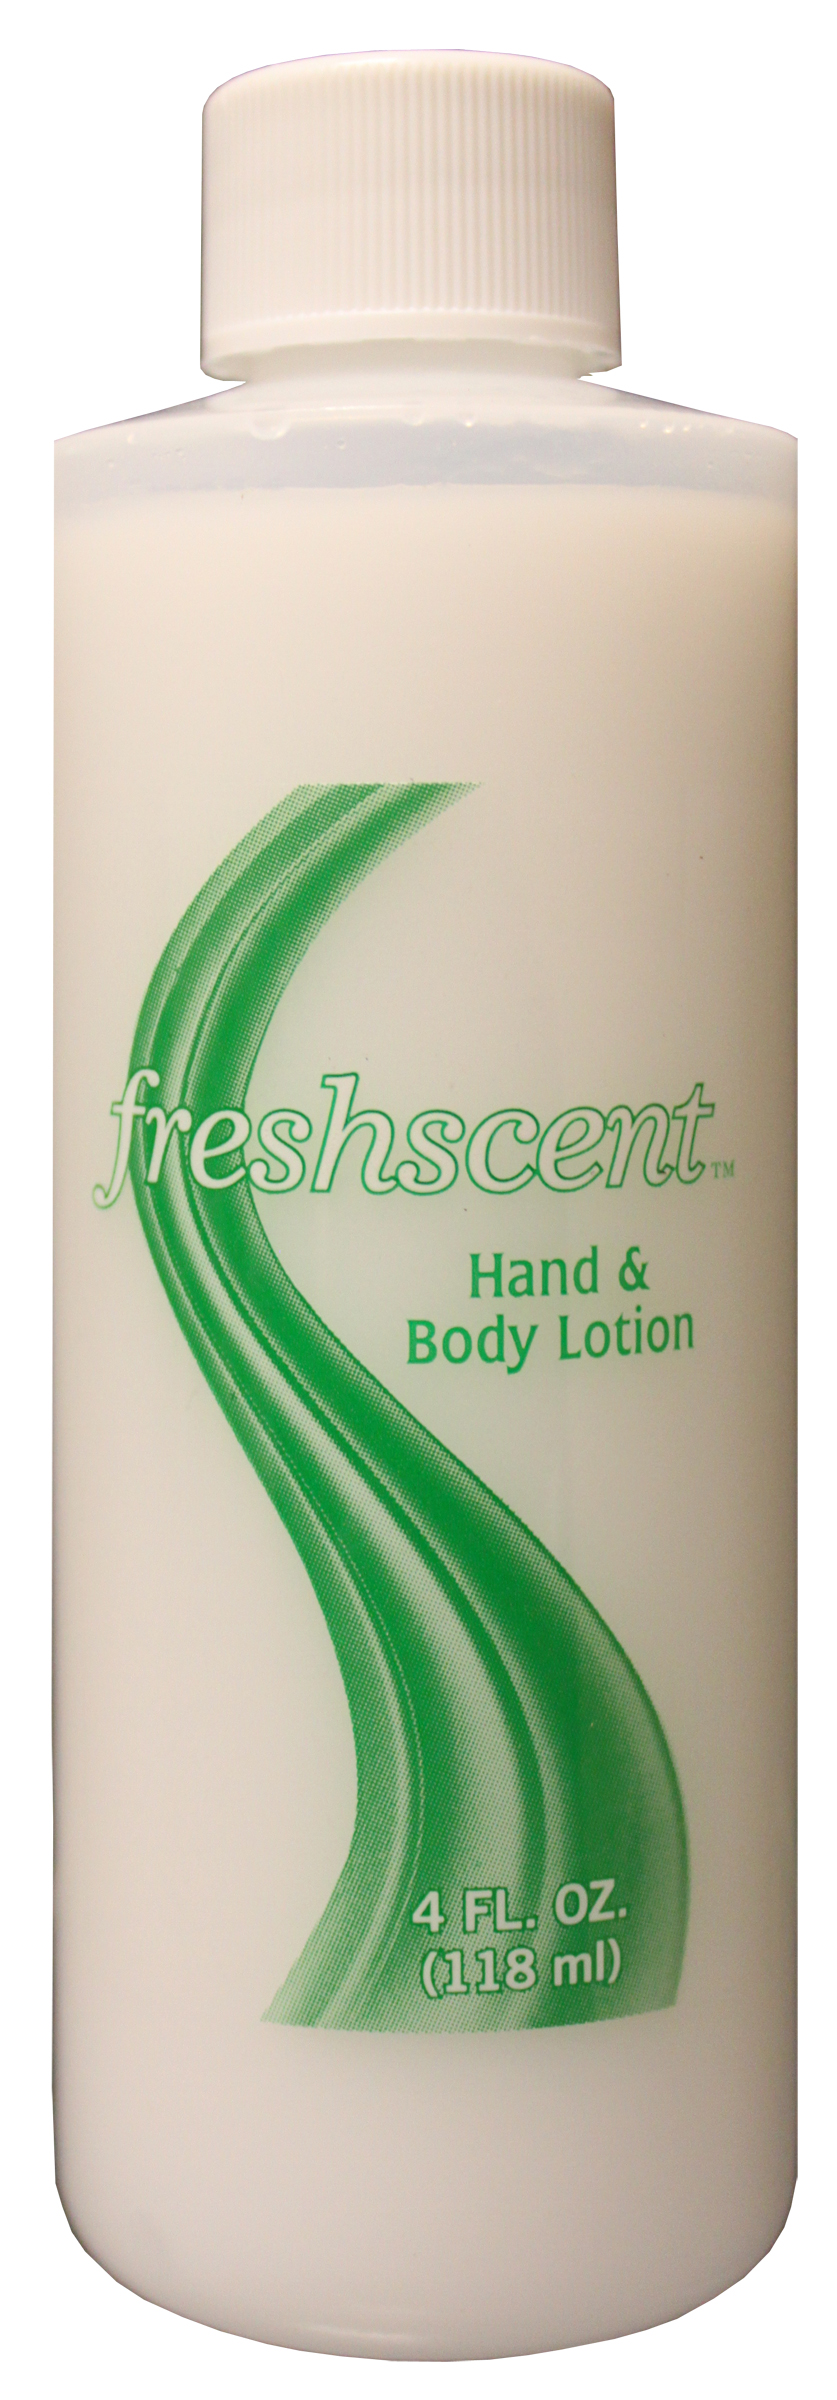 Freshscent 4 oz. Hand & Body Lotion